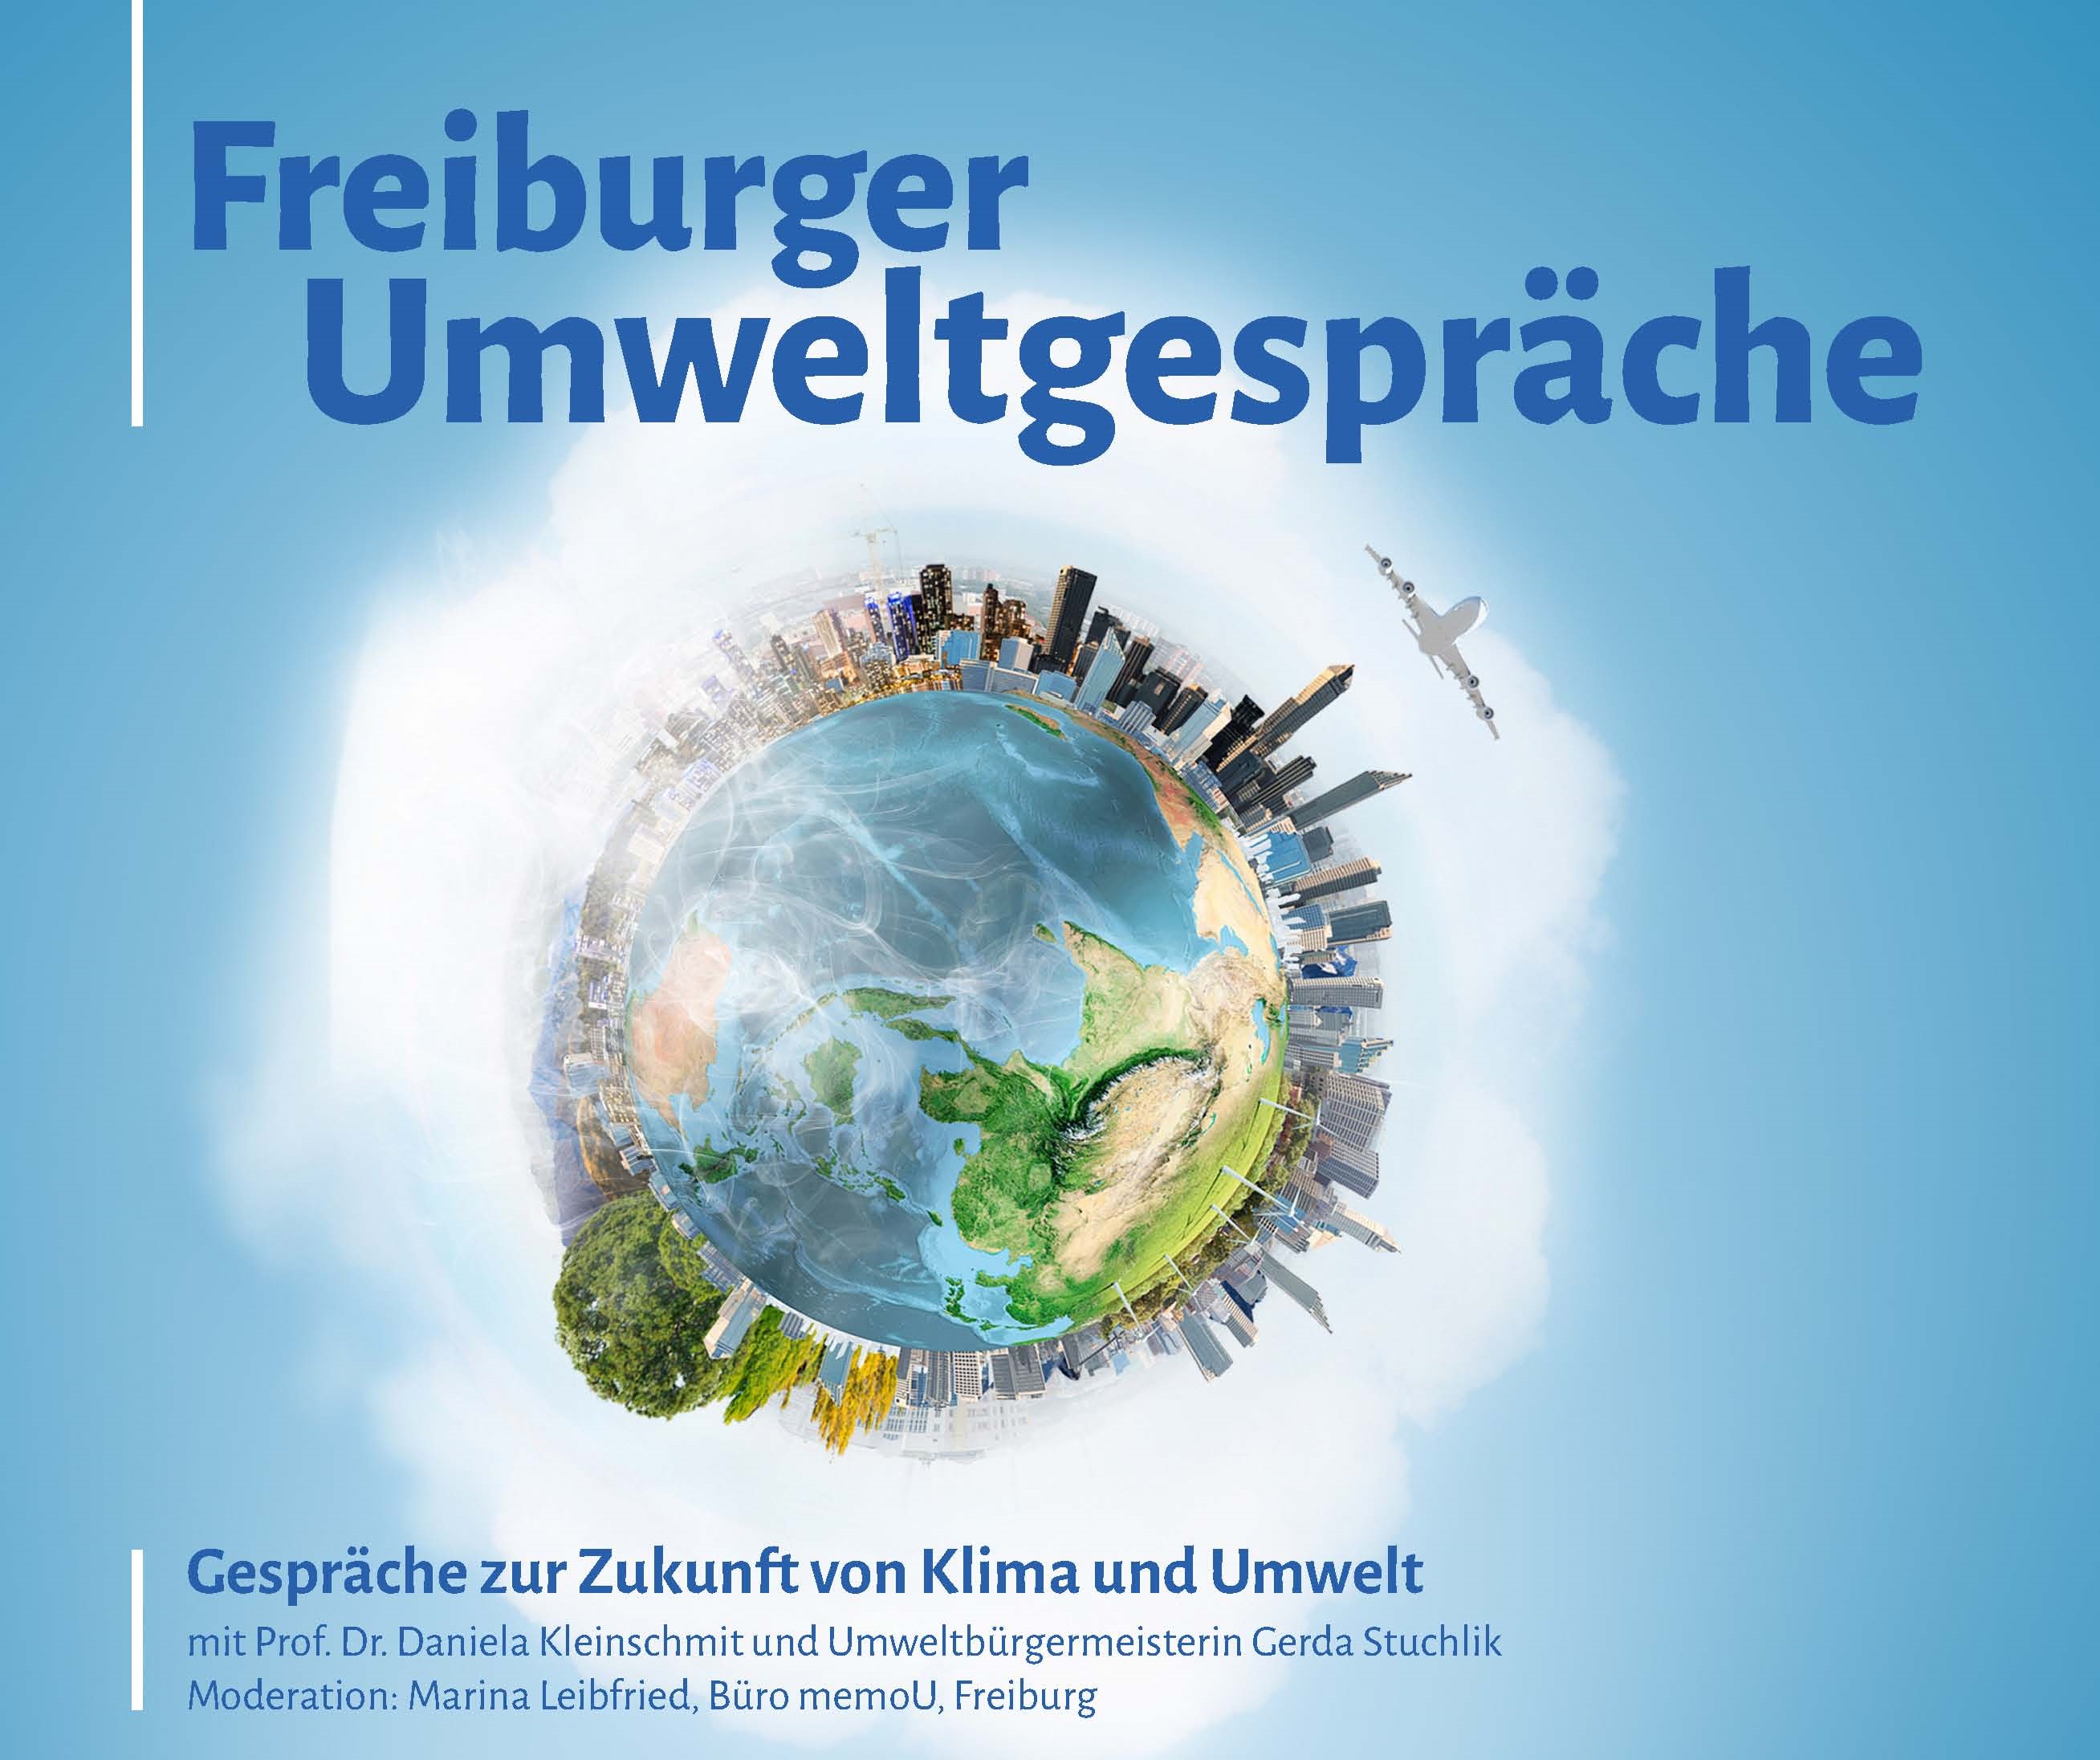 Freiburger Umweltgespräche am 20.02.2019